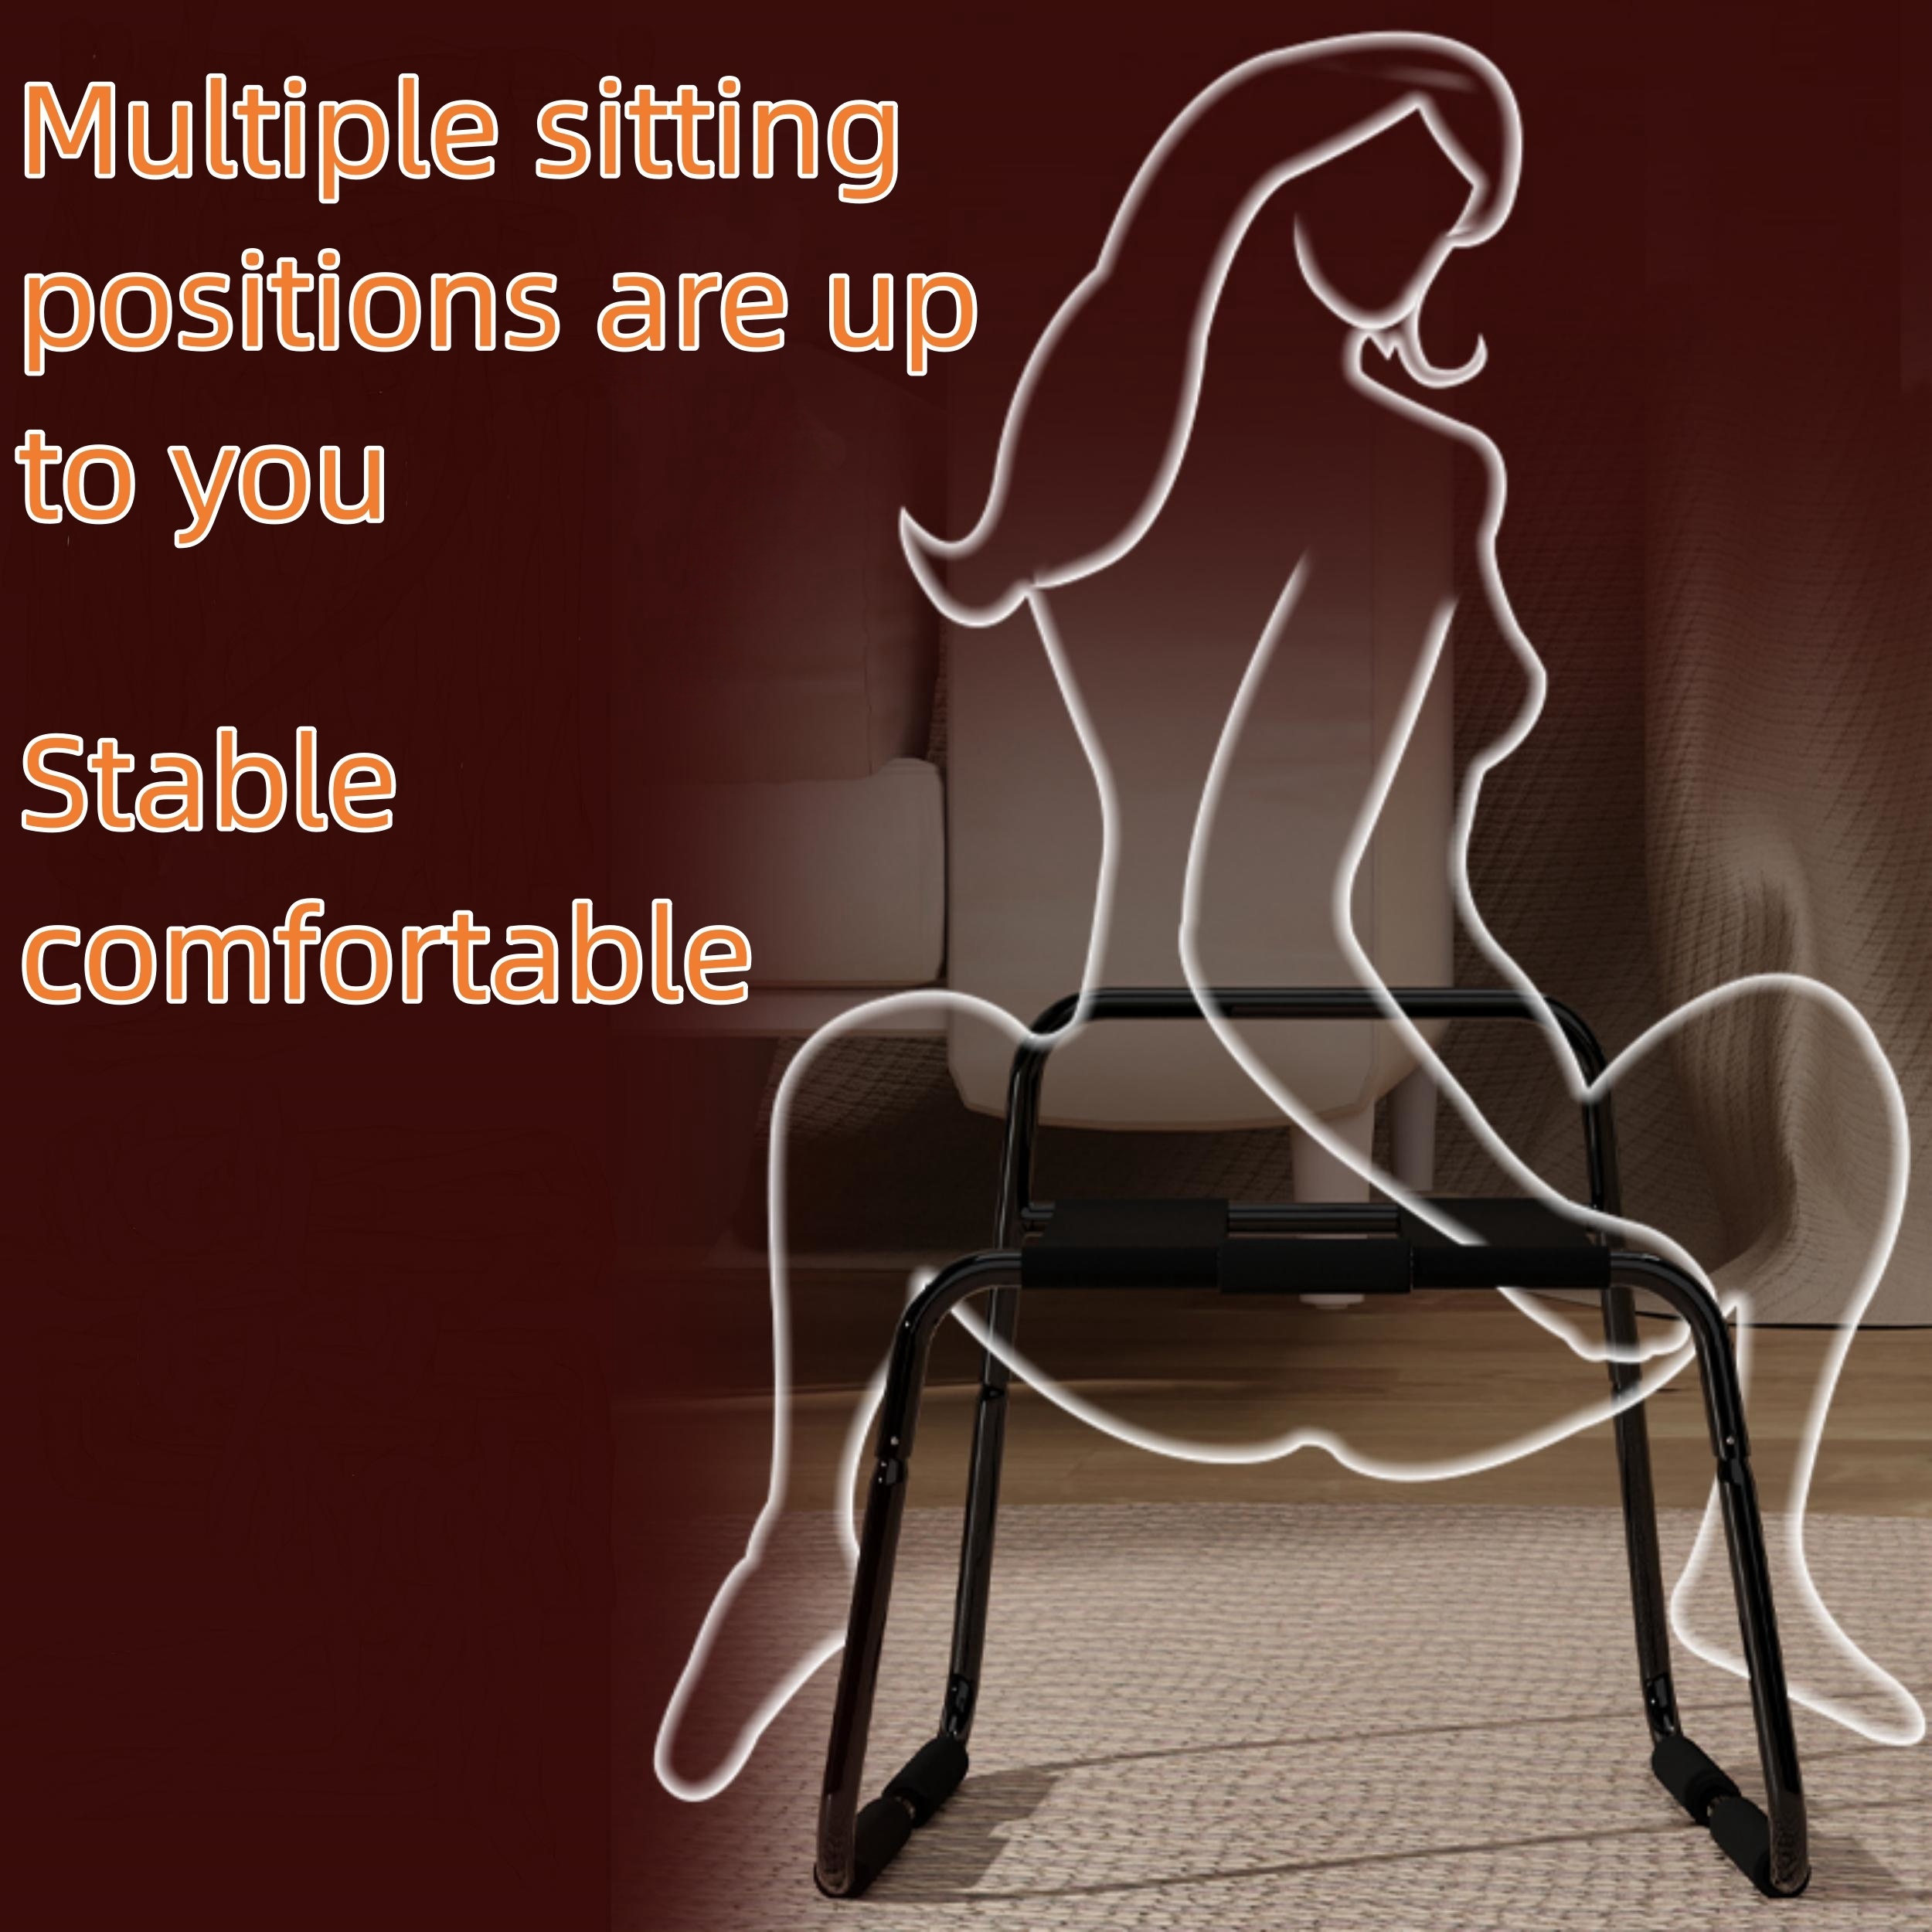 El sexo muebles silla sofá posiciones sexuales juegos para adultos